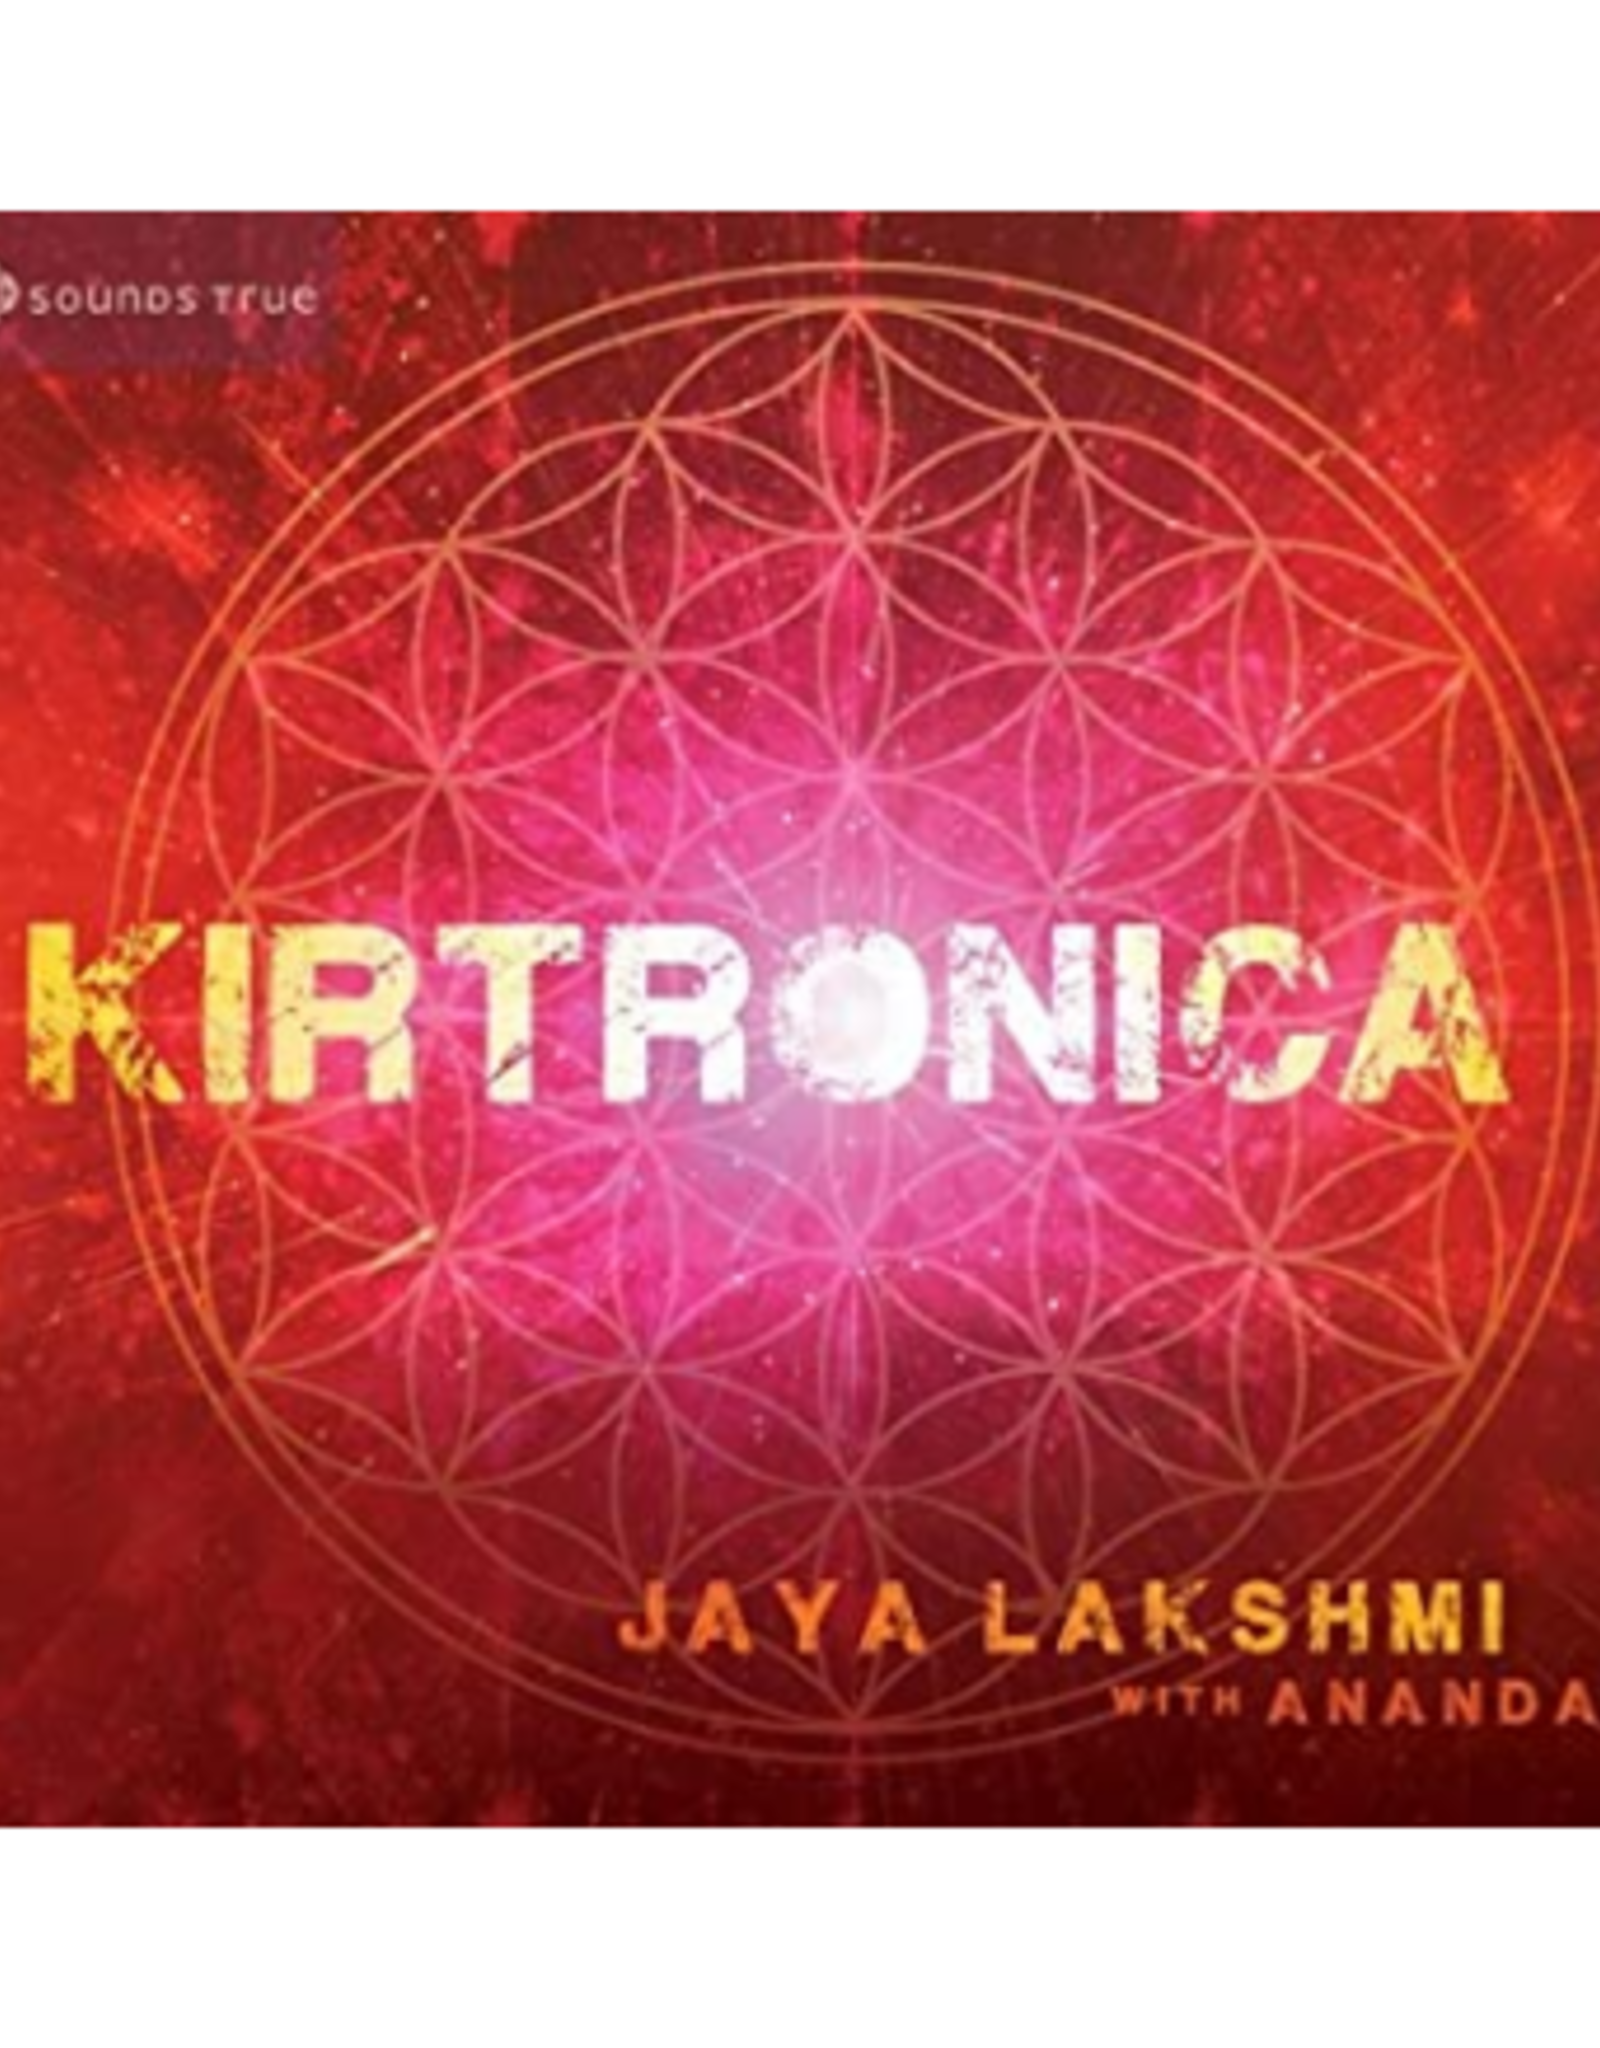 Jaya Lakshmi Kirtronica CD by Jaya Lakshmi